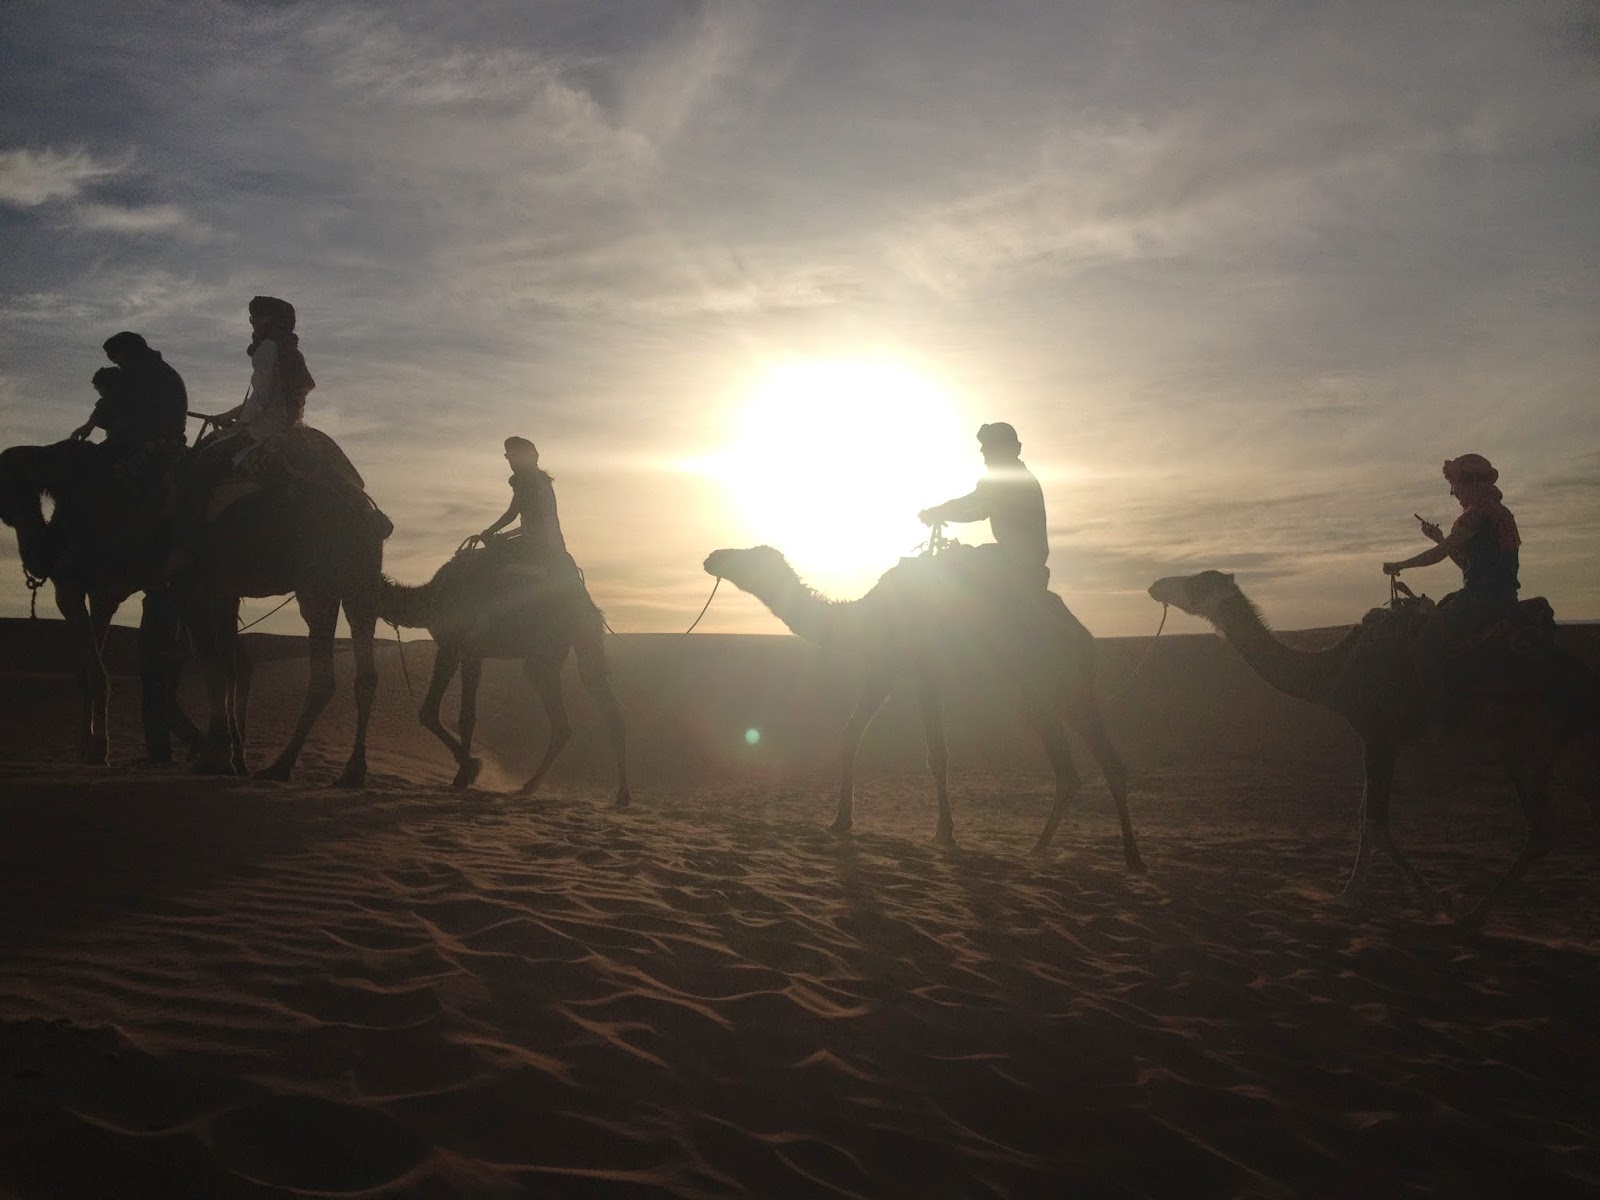 Ruta de 6 días por el sur de Marruecos - Blogs of Morocco - De Marrakech a Chegaga (9)